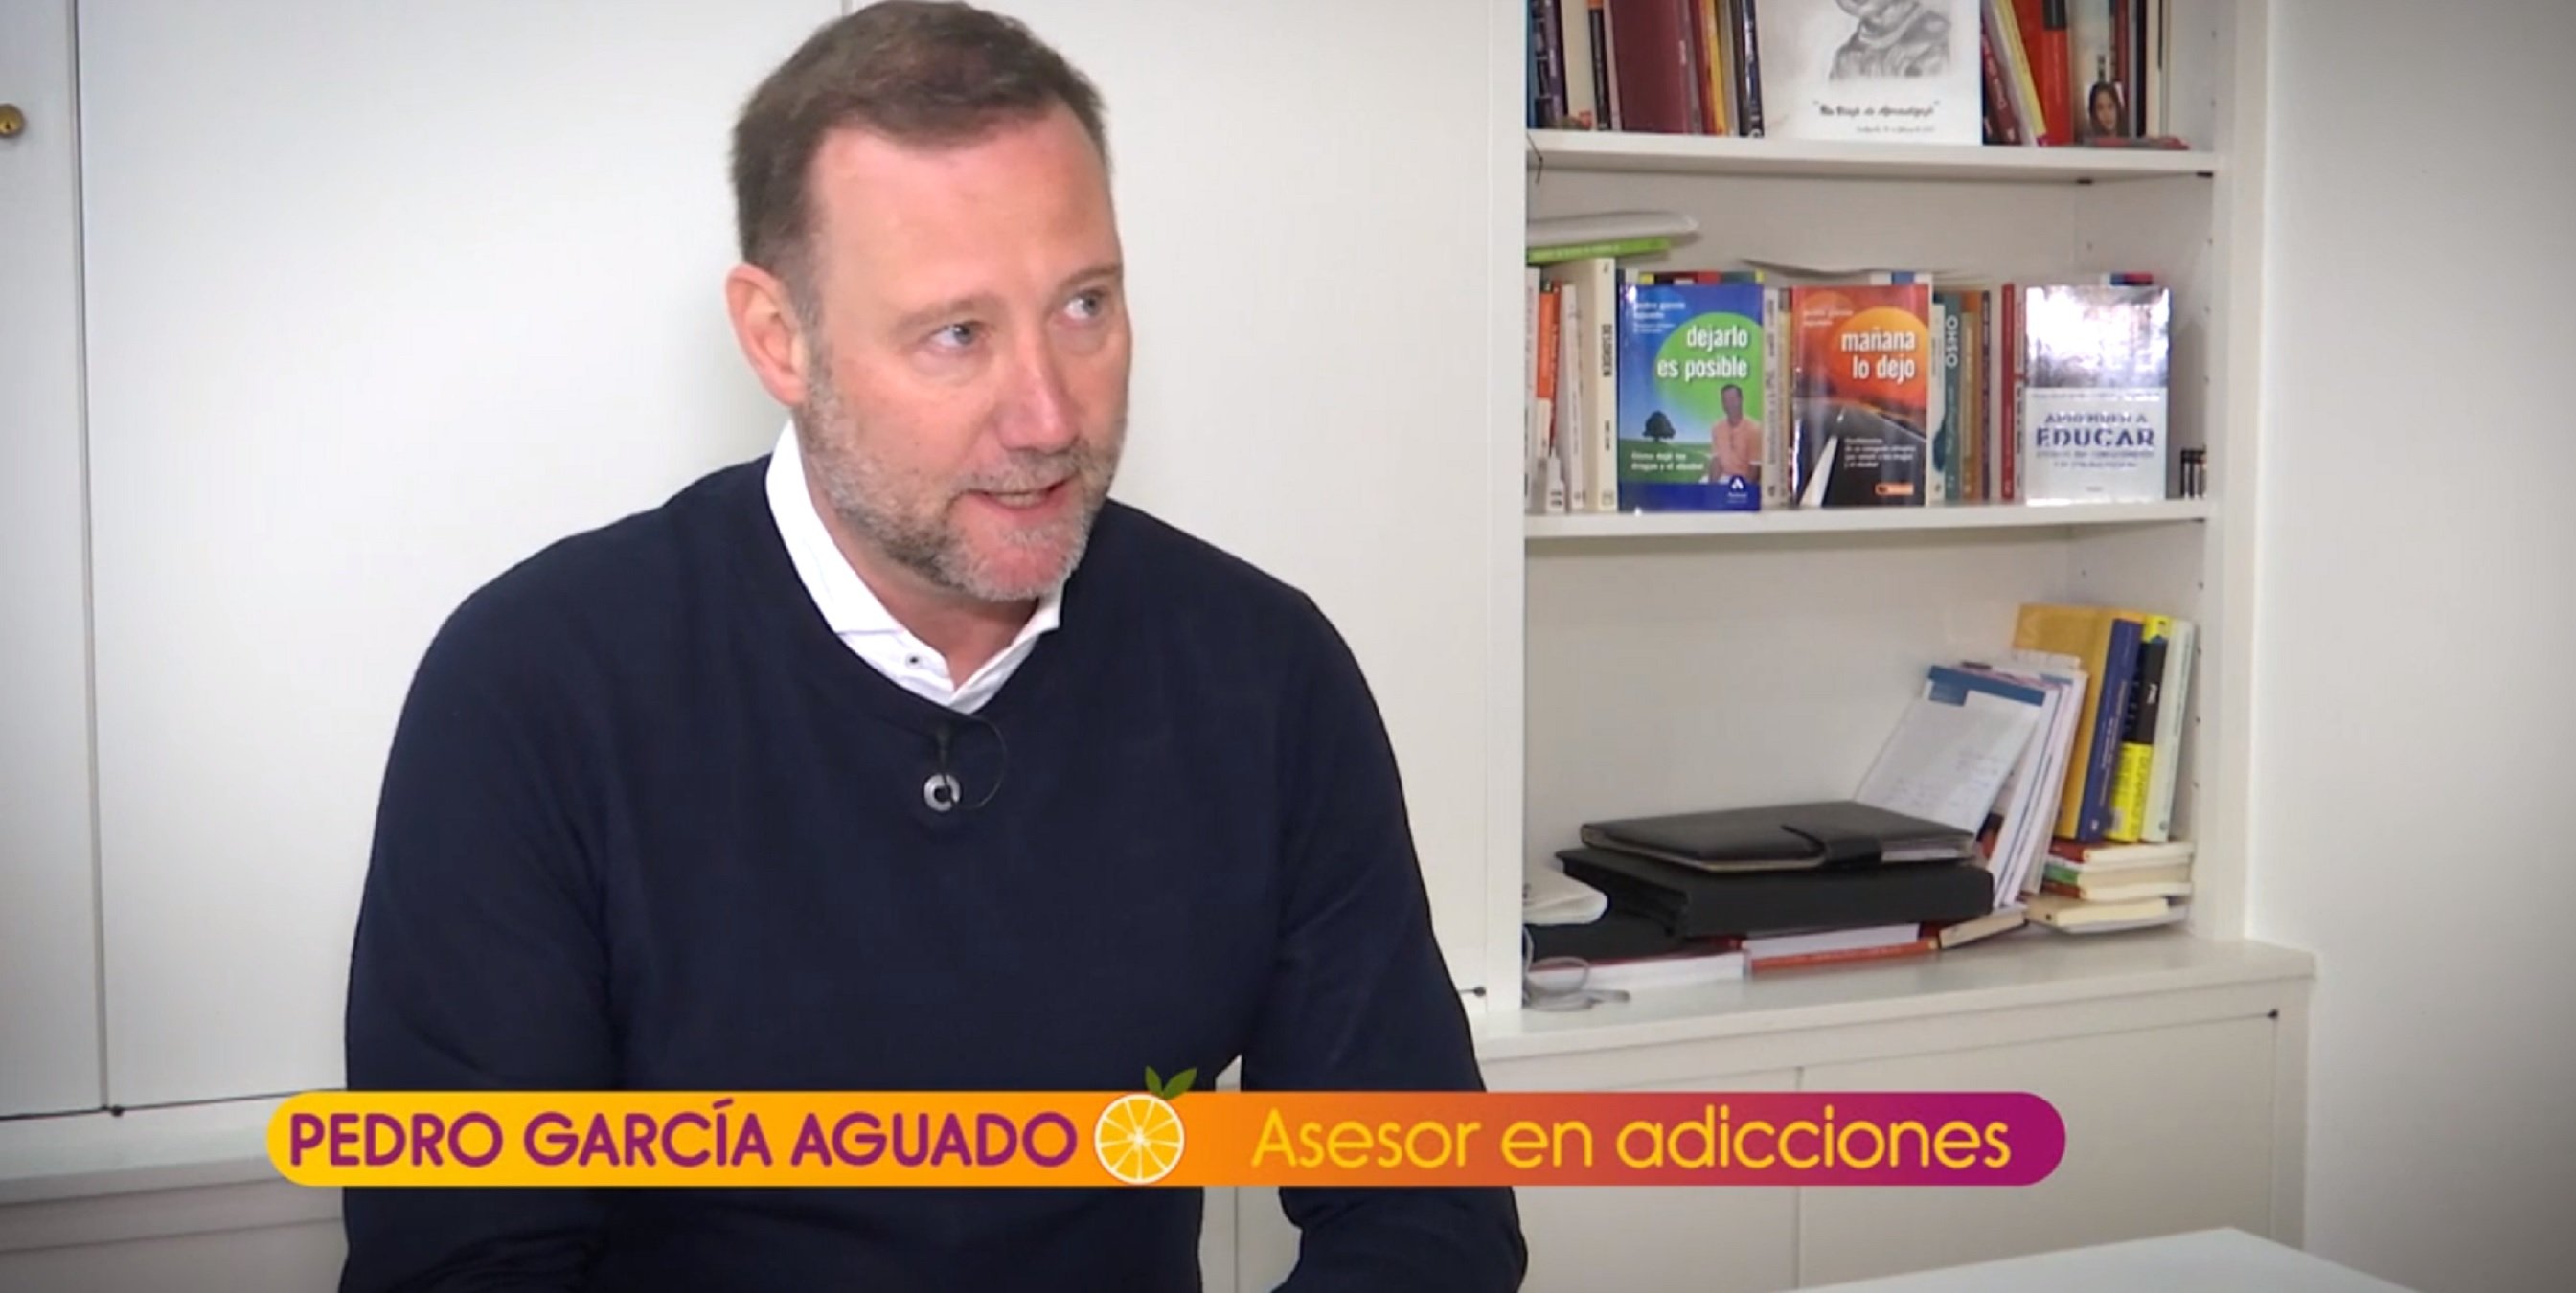 Pedro García Aguado habla en Telecinco de la adicción a la cocaína de Rivera